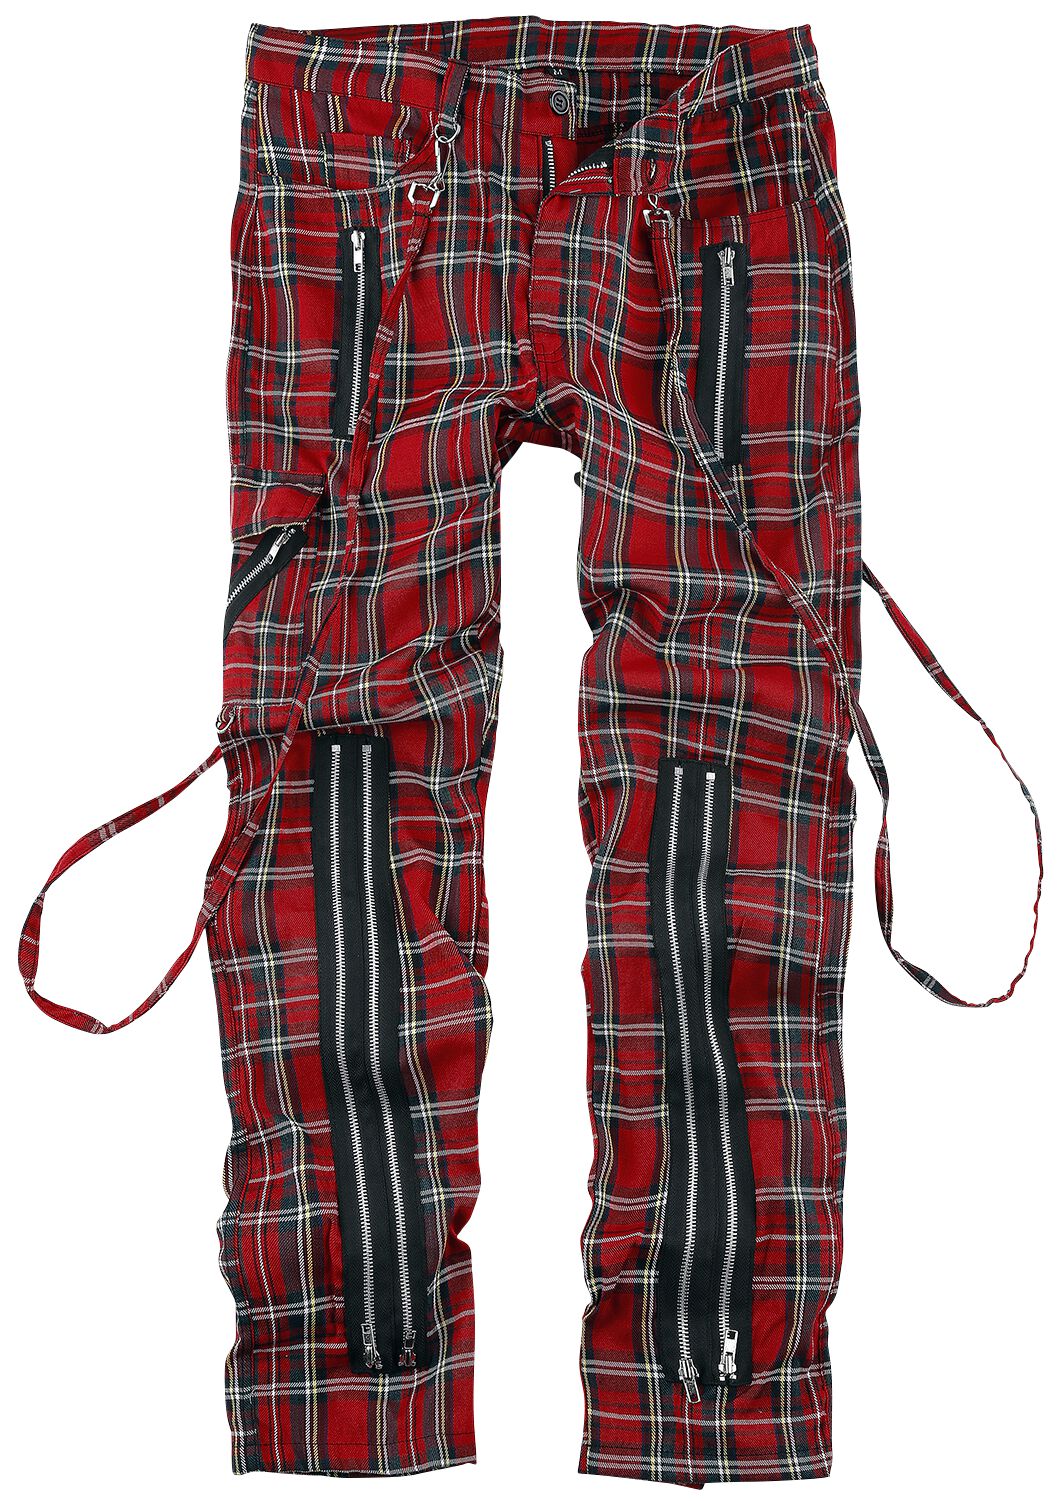 Pantalon en toile Gothic de Banned Alternative - Avengence Check - S à XXL - pour Homme - rouge